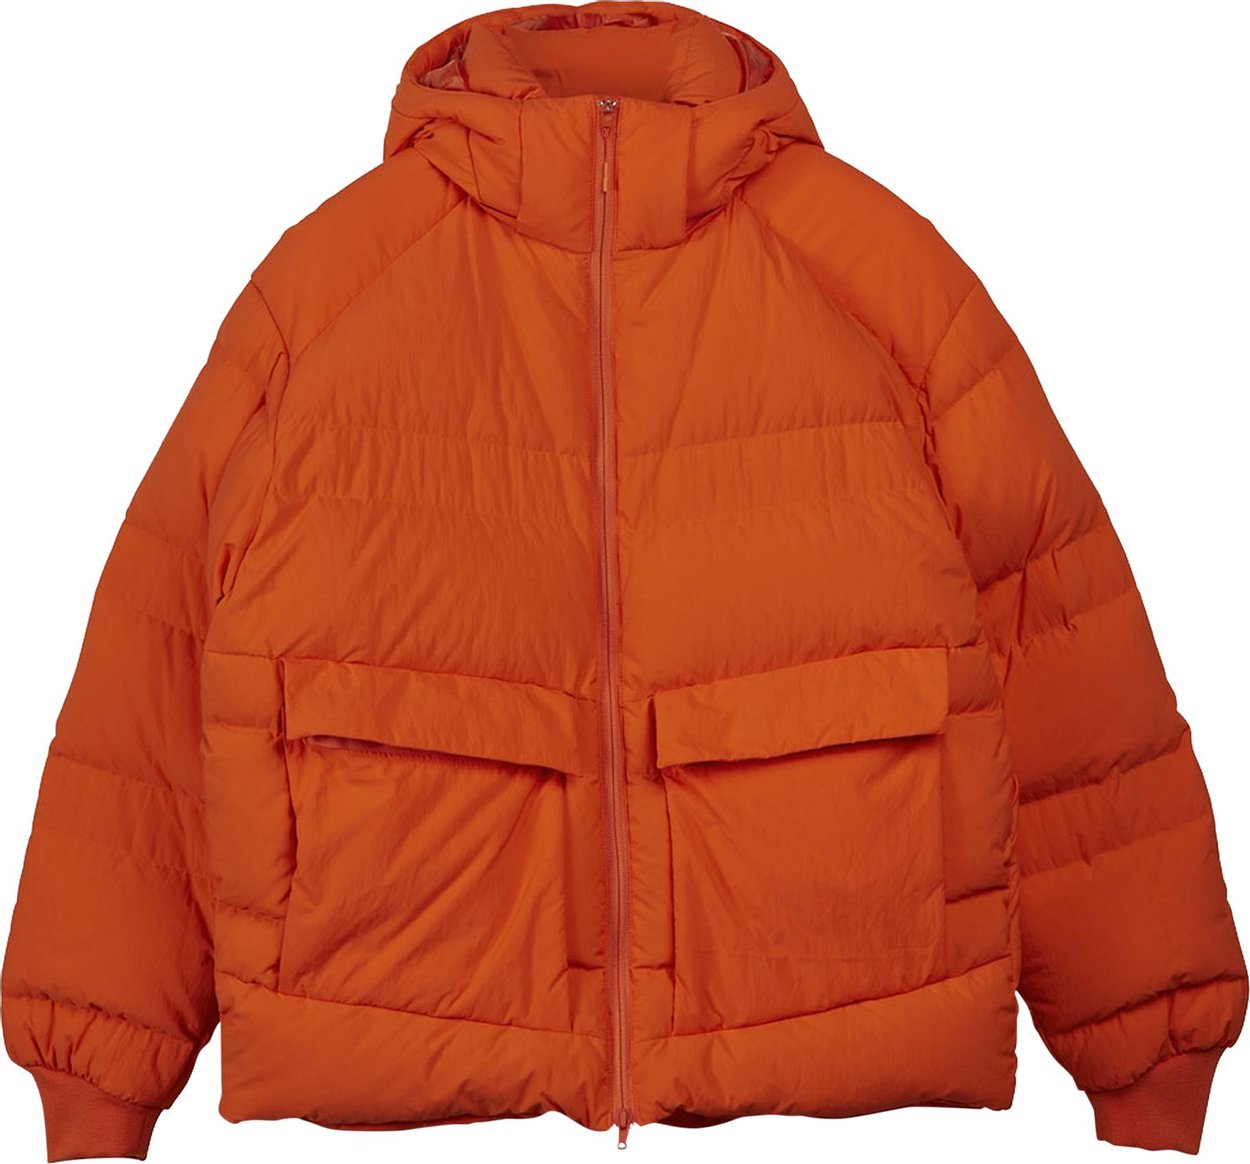 Y-3 Classic Puffy Down Jacket 'Orange' | GOAT